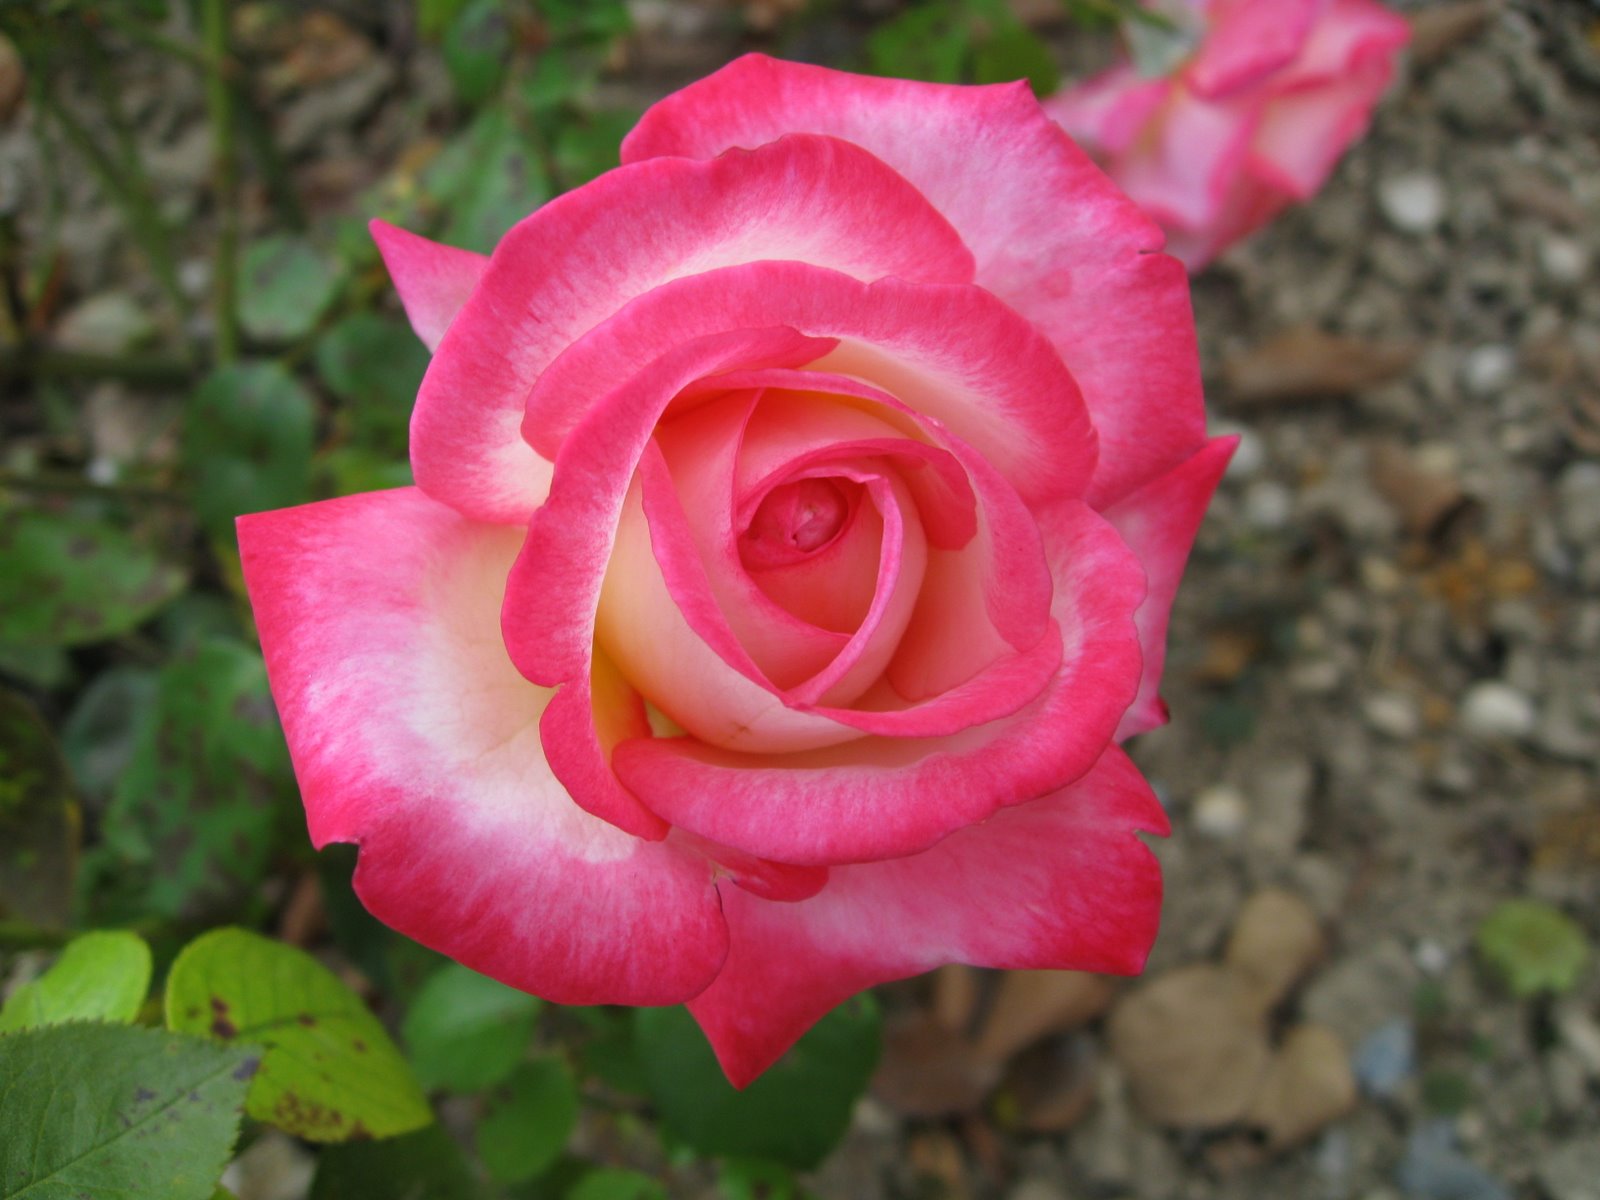 sfondi rose più belli,fiore,pianta fiorita,julia child rose,rose da giardino,petalo